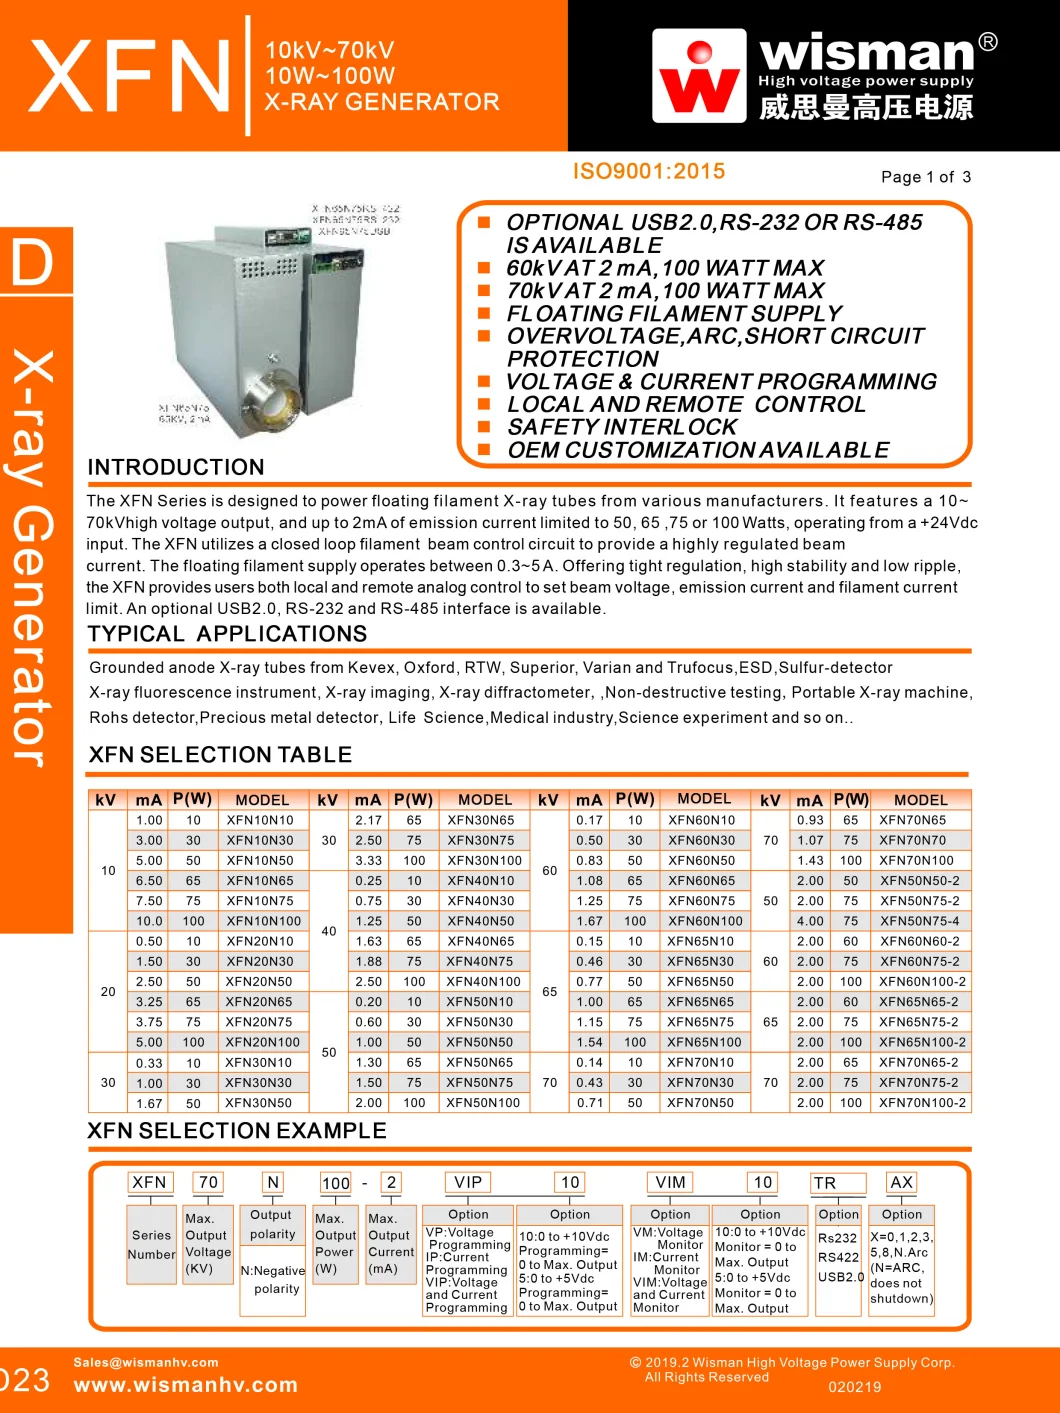 XFN Series X-ray Generator For Portable X-ray Machine (10kV-70kV,10W-100W )